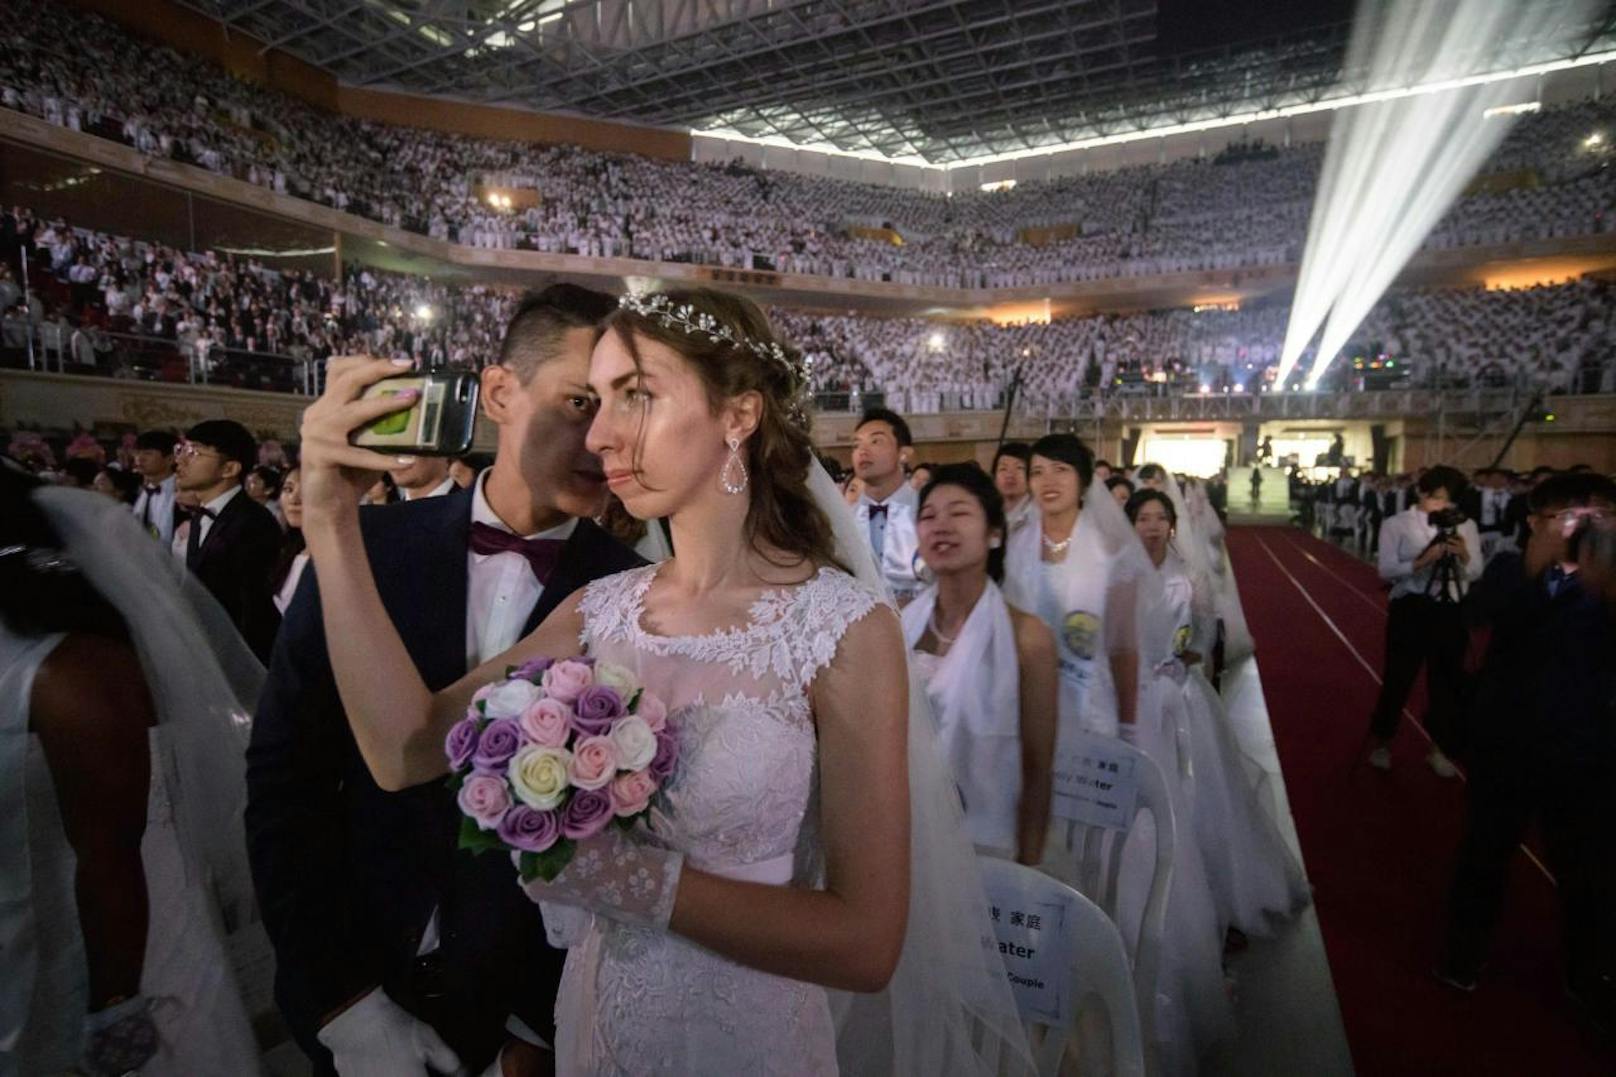 Knapp 4000 Paare haben am Montag, 27. August, in einer Massenzeremonie in Südkorea geheiratet. Die Paare gehören der Unification-Church-Bewegung an.